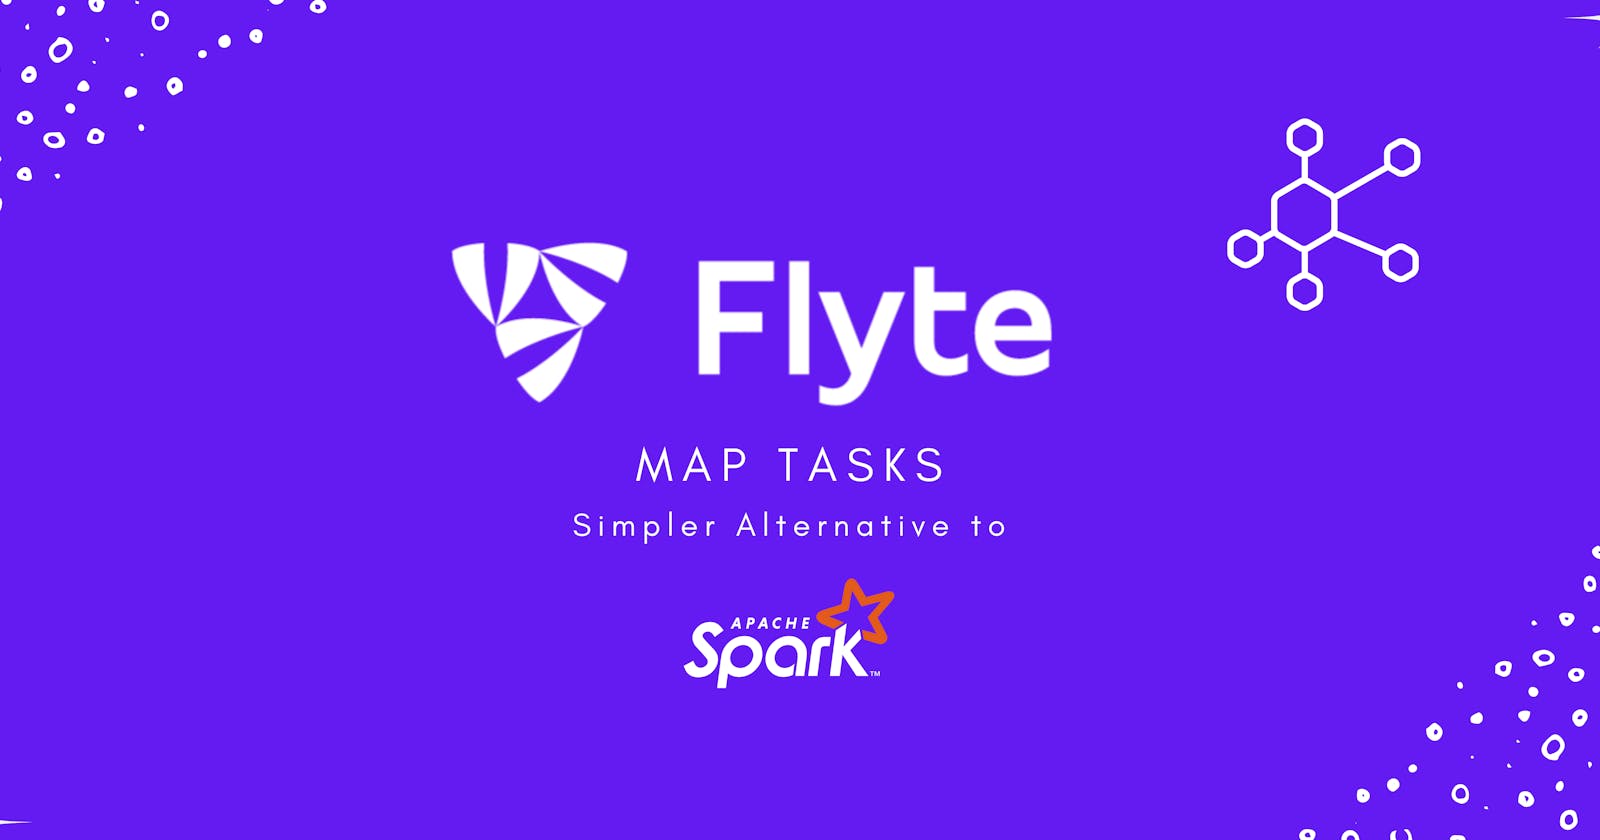 Flyte Map Tasks: A Simpler Alternative to Apache Spark